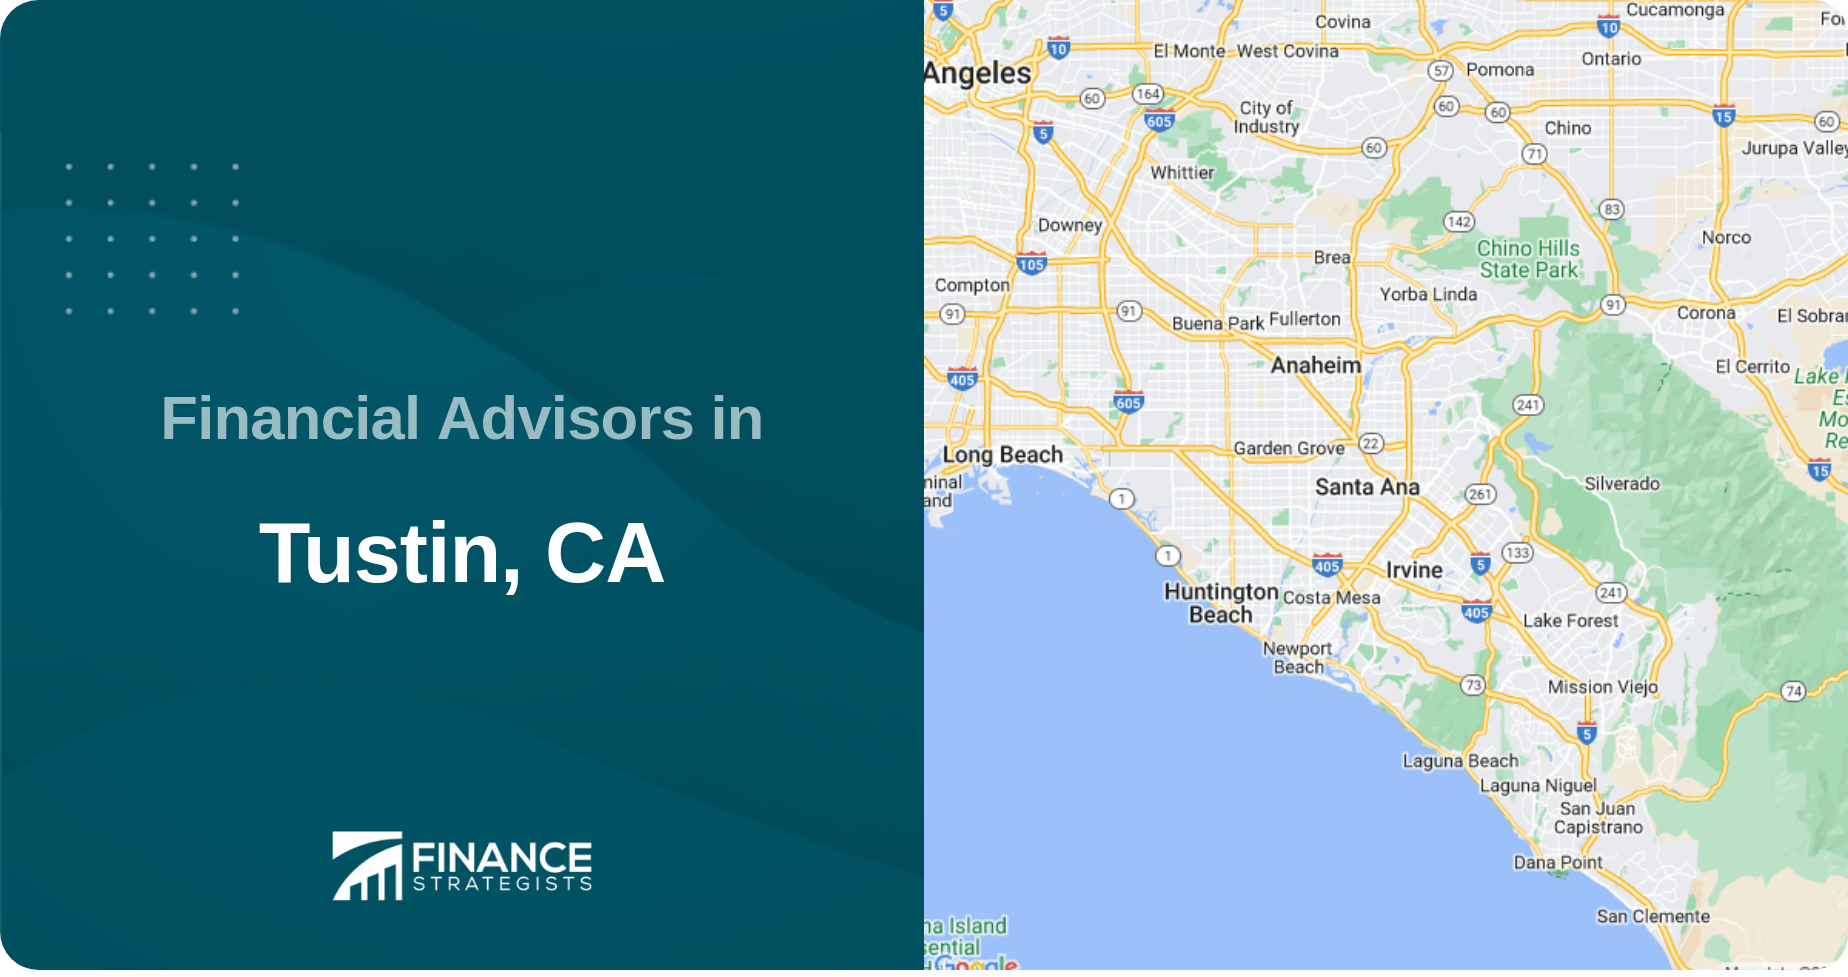 Financial Advisors in Tustin, CA